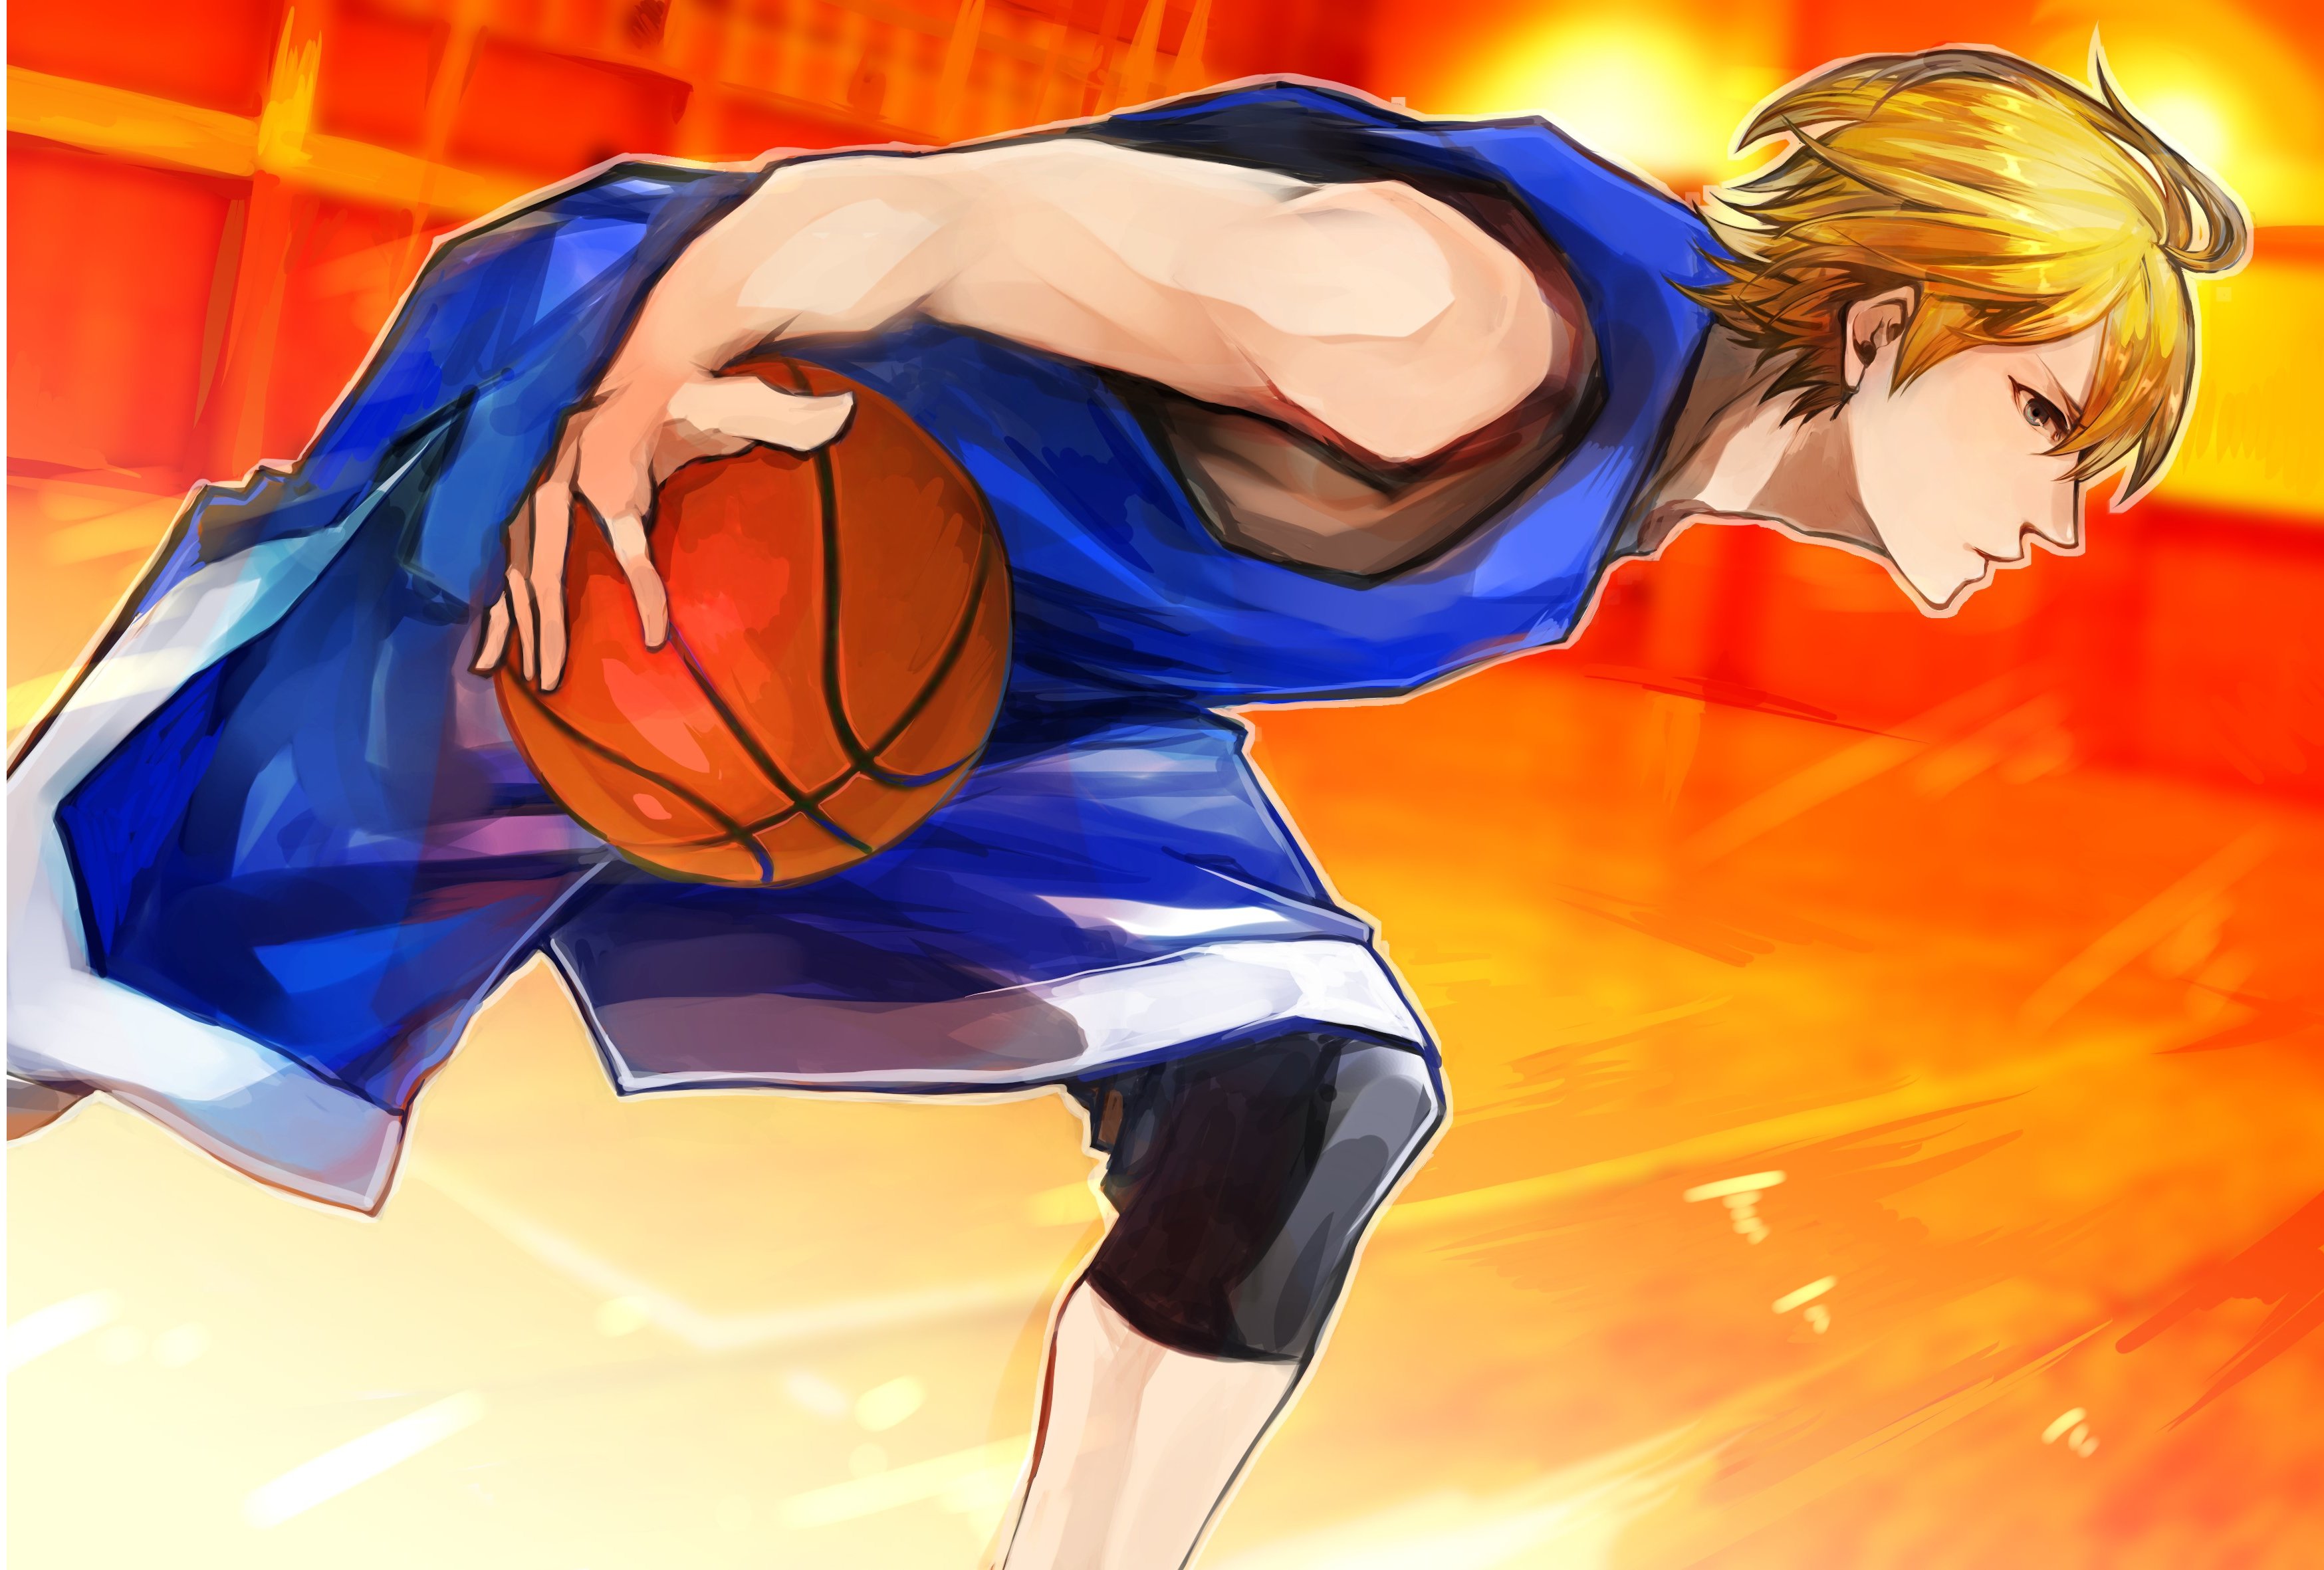 kise wallpaper,karikatur,anime,basketball,basketball spieler,basketball bewegt sich